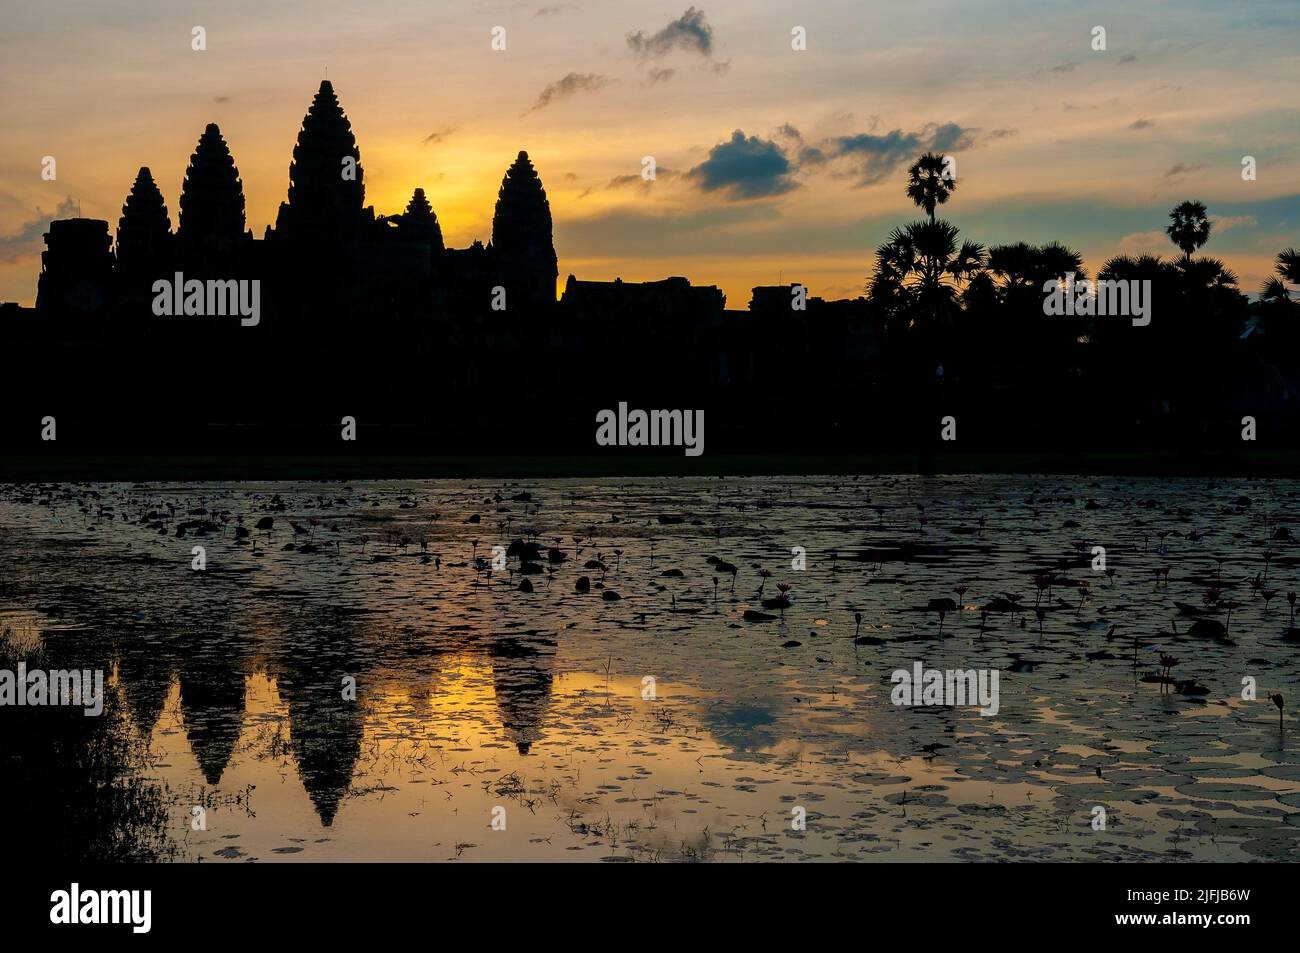 La ruine du temple d'Angkor Wat au lever du soleil, Siem Reap, Cambodge. Banque D'Images